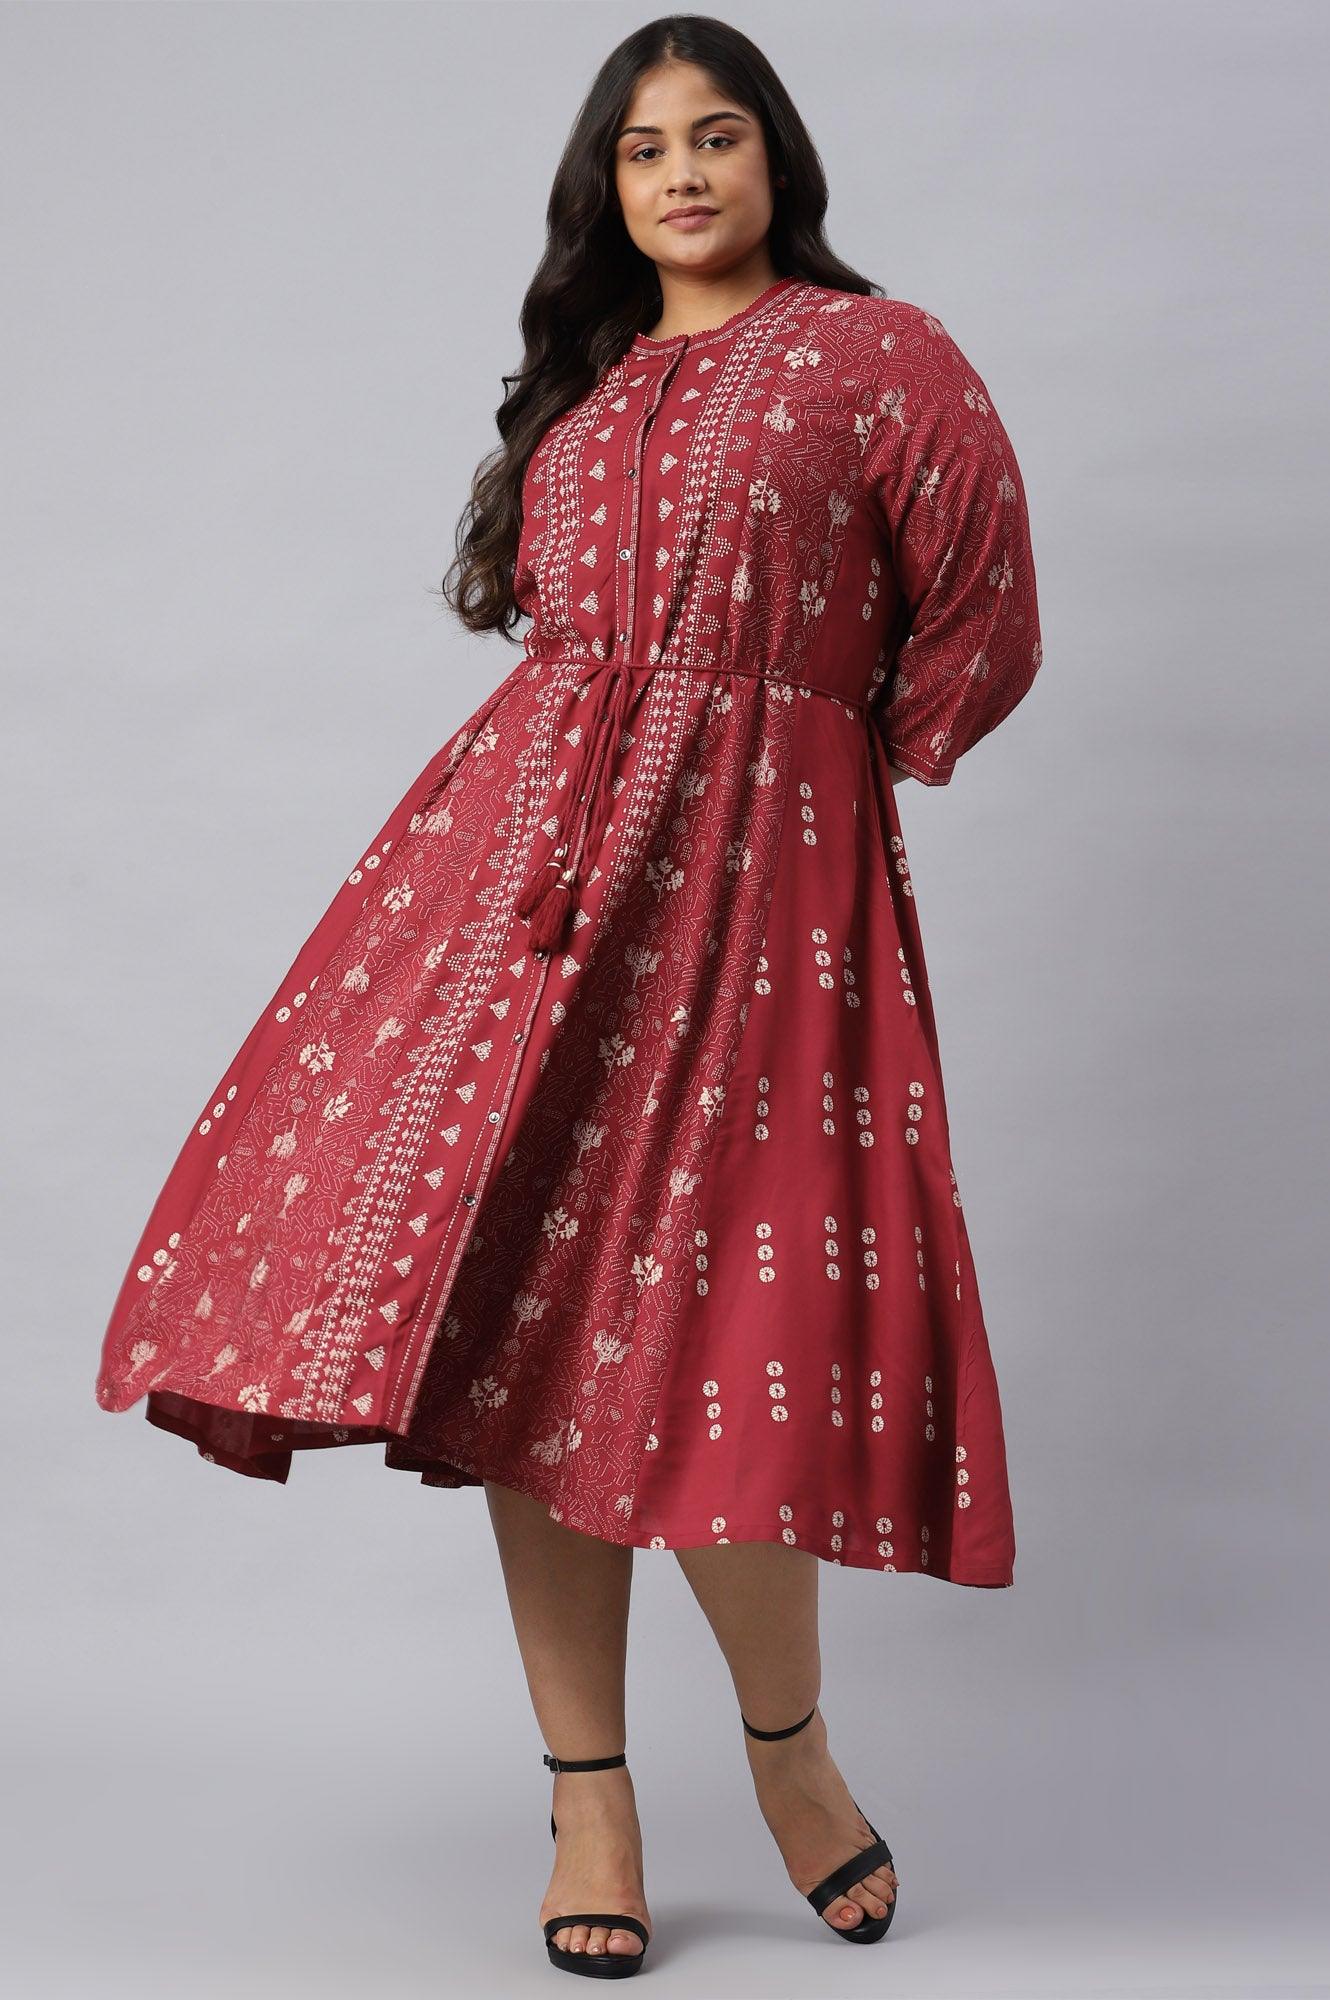 Plus Size Maroon Floral Printed Panelled Indie Dress - wforwoman